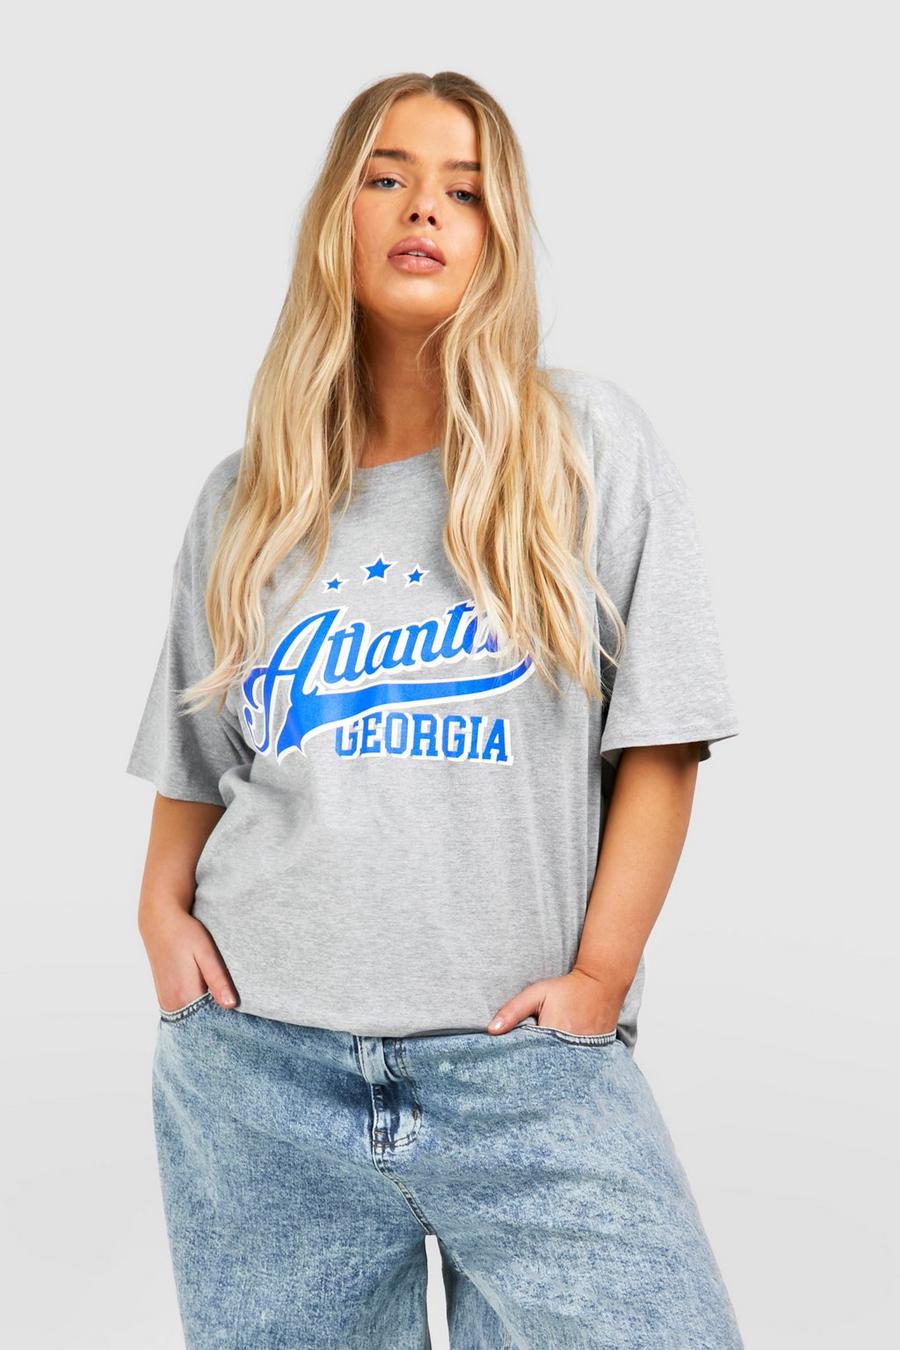 Camiseta Plus con estampado de Atlanta y Georgia, Grey